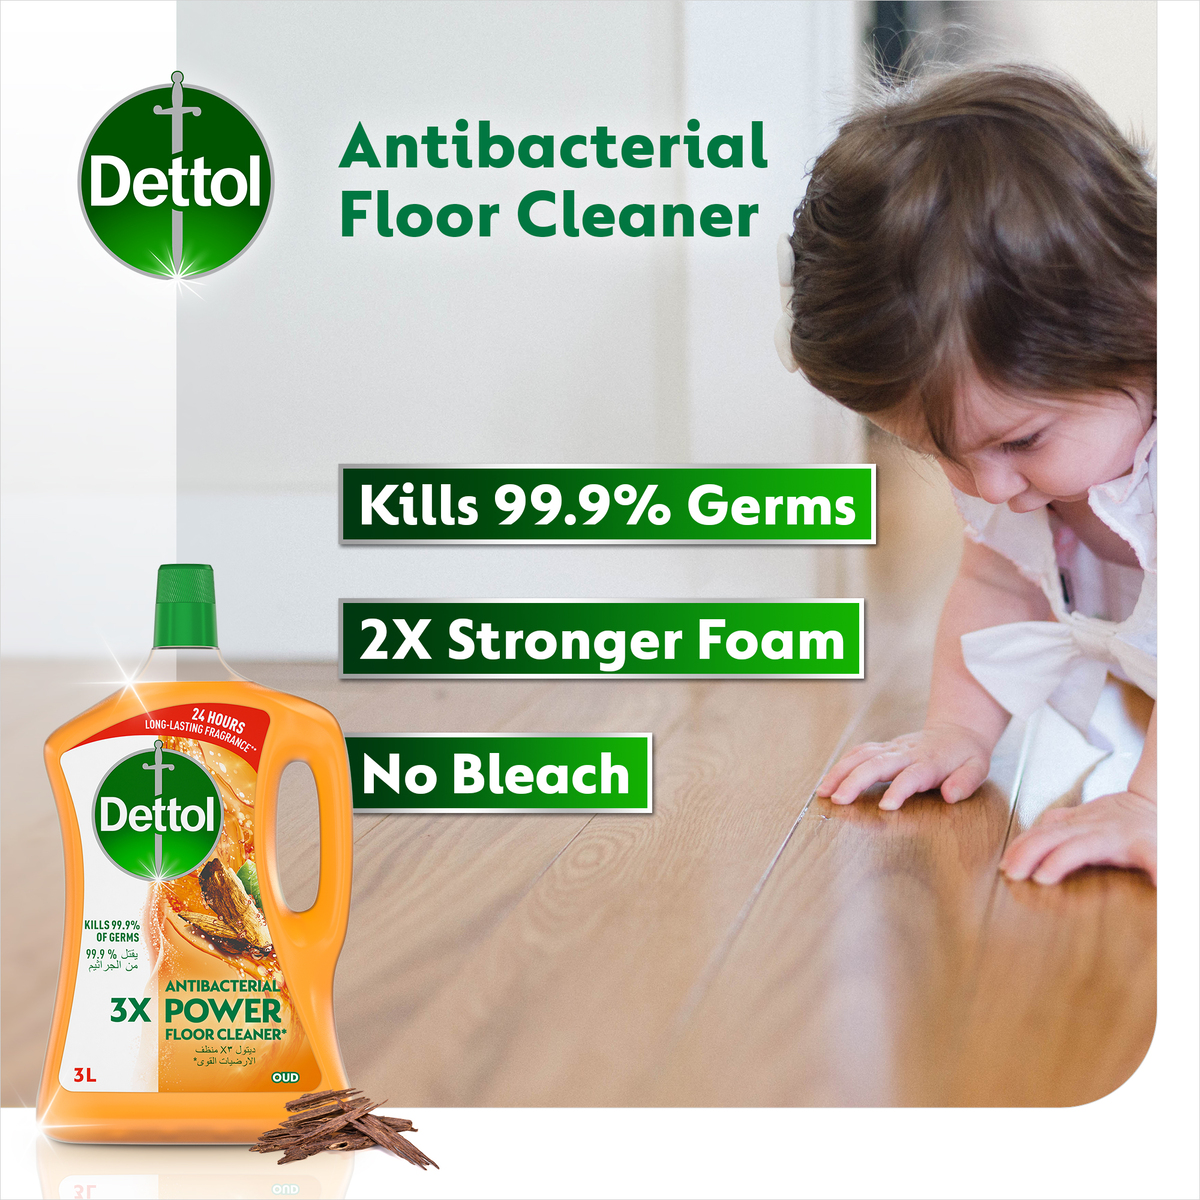 Dettol Oud Antibacterial Power Floor Cleaner 3 Litres